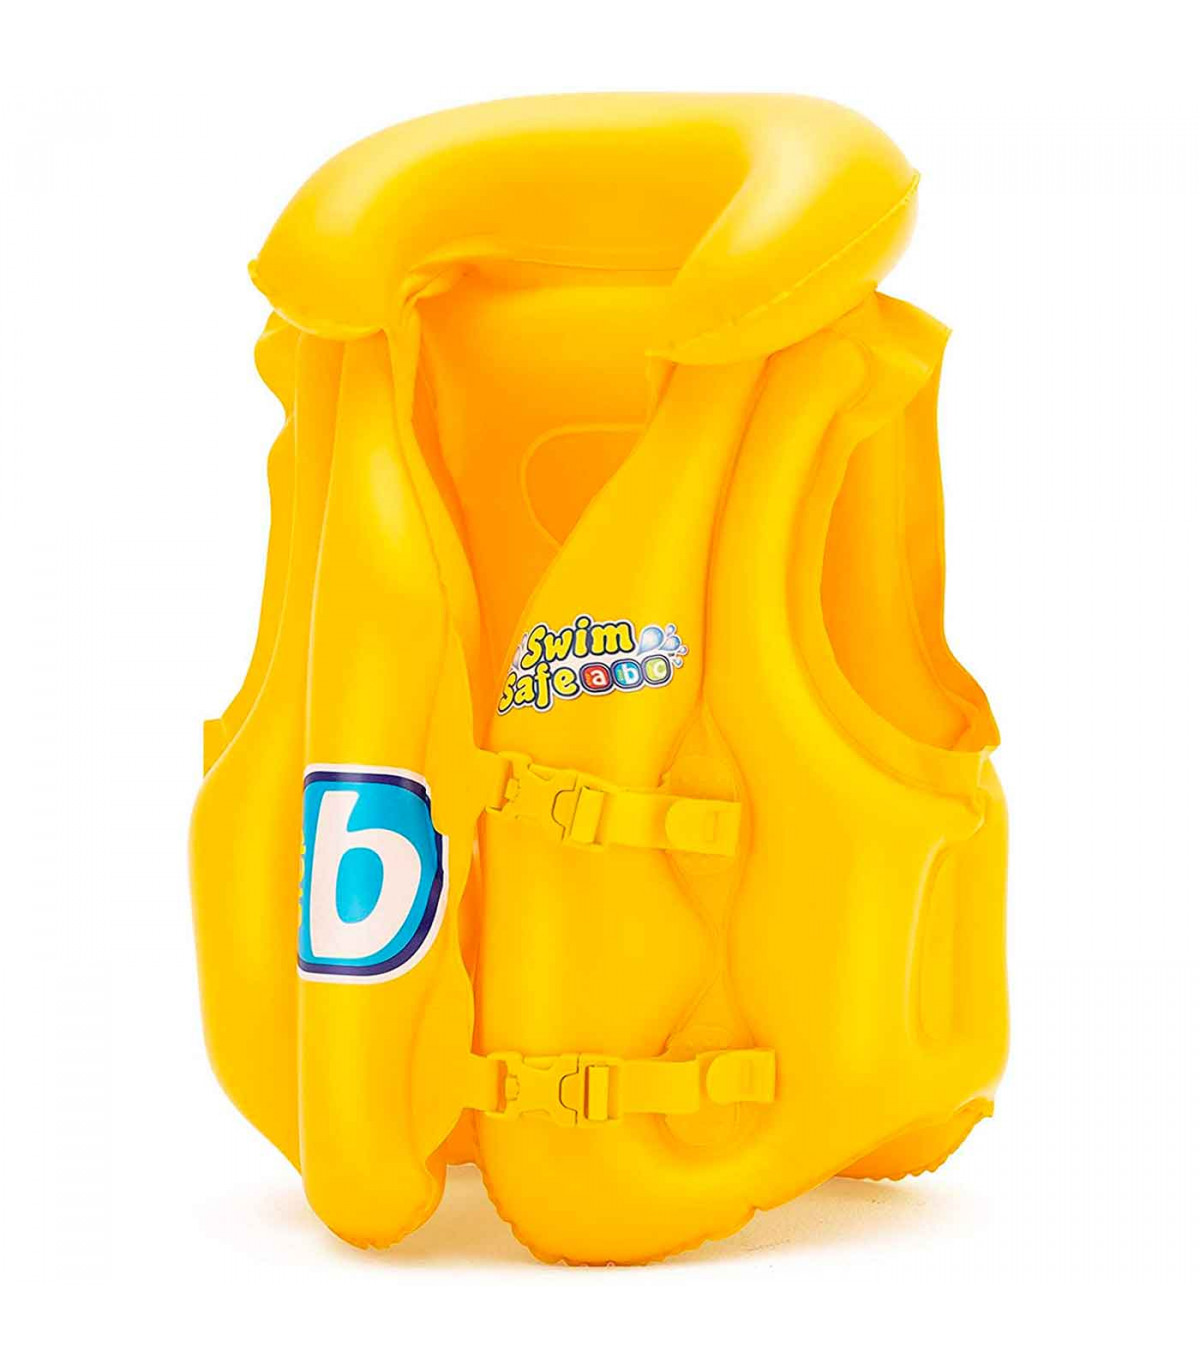 Tradineur - Chaleco hinchable infantil, incluye hebillas ajustables, inflable y 3 cámaras de playa, piscina